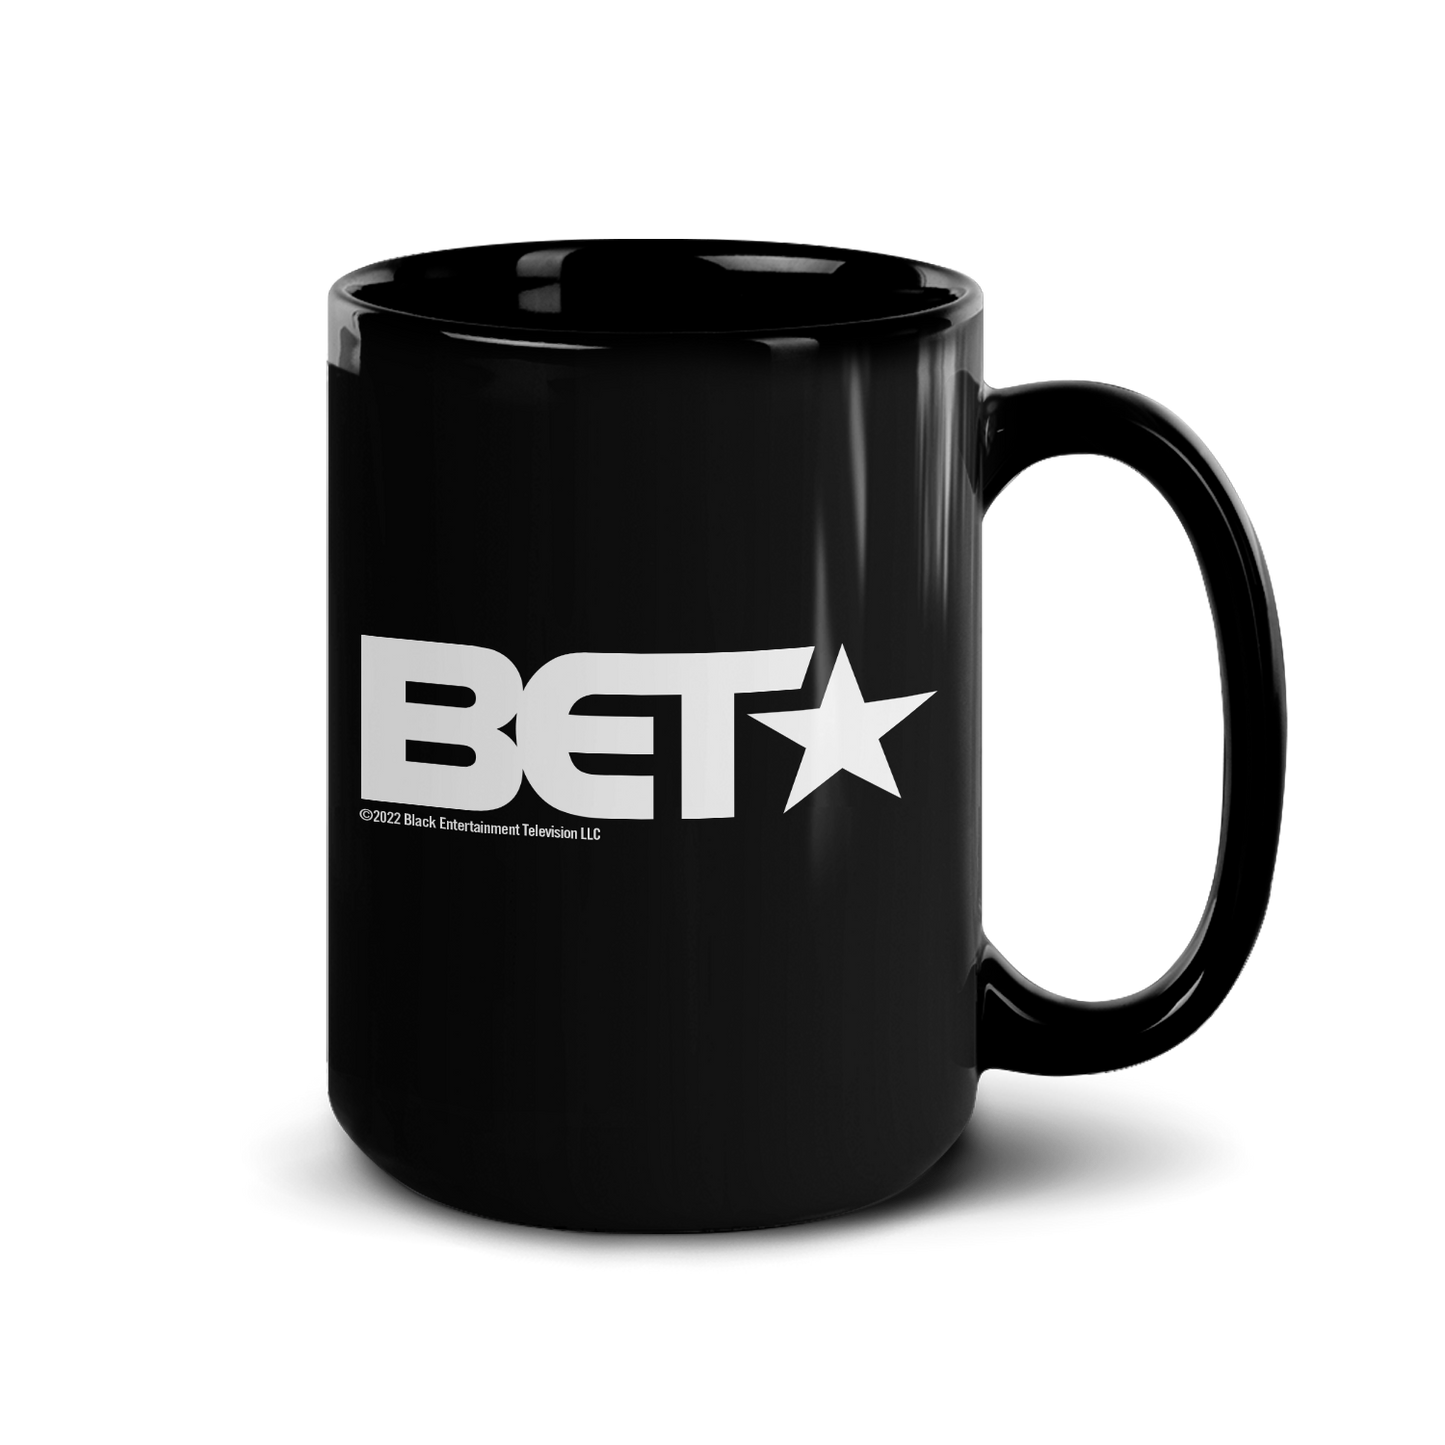 BET Black Is In The Name Black Mug